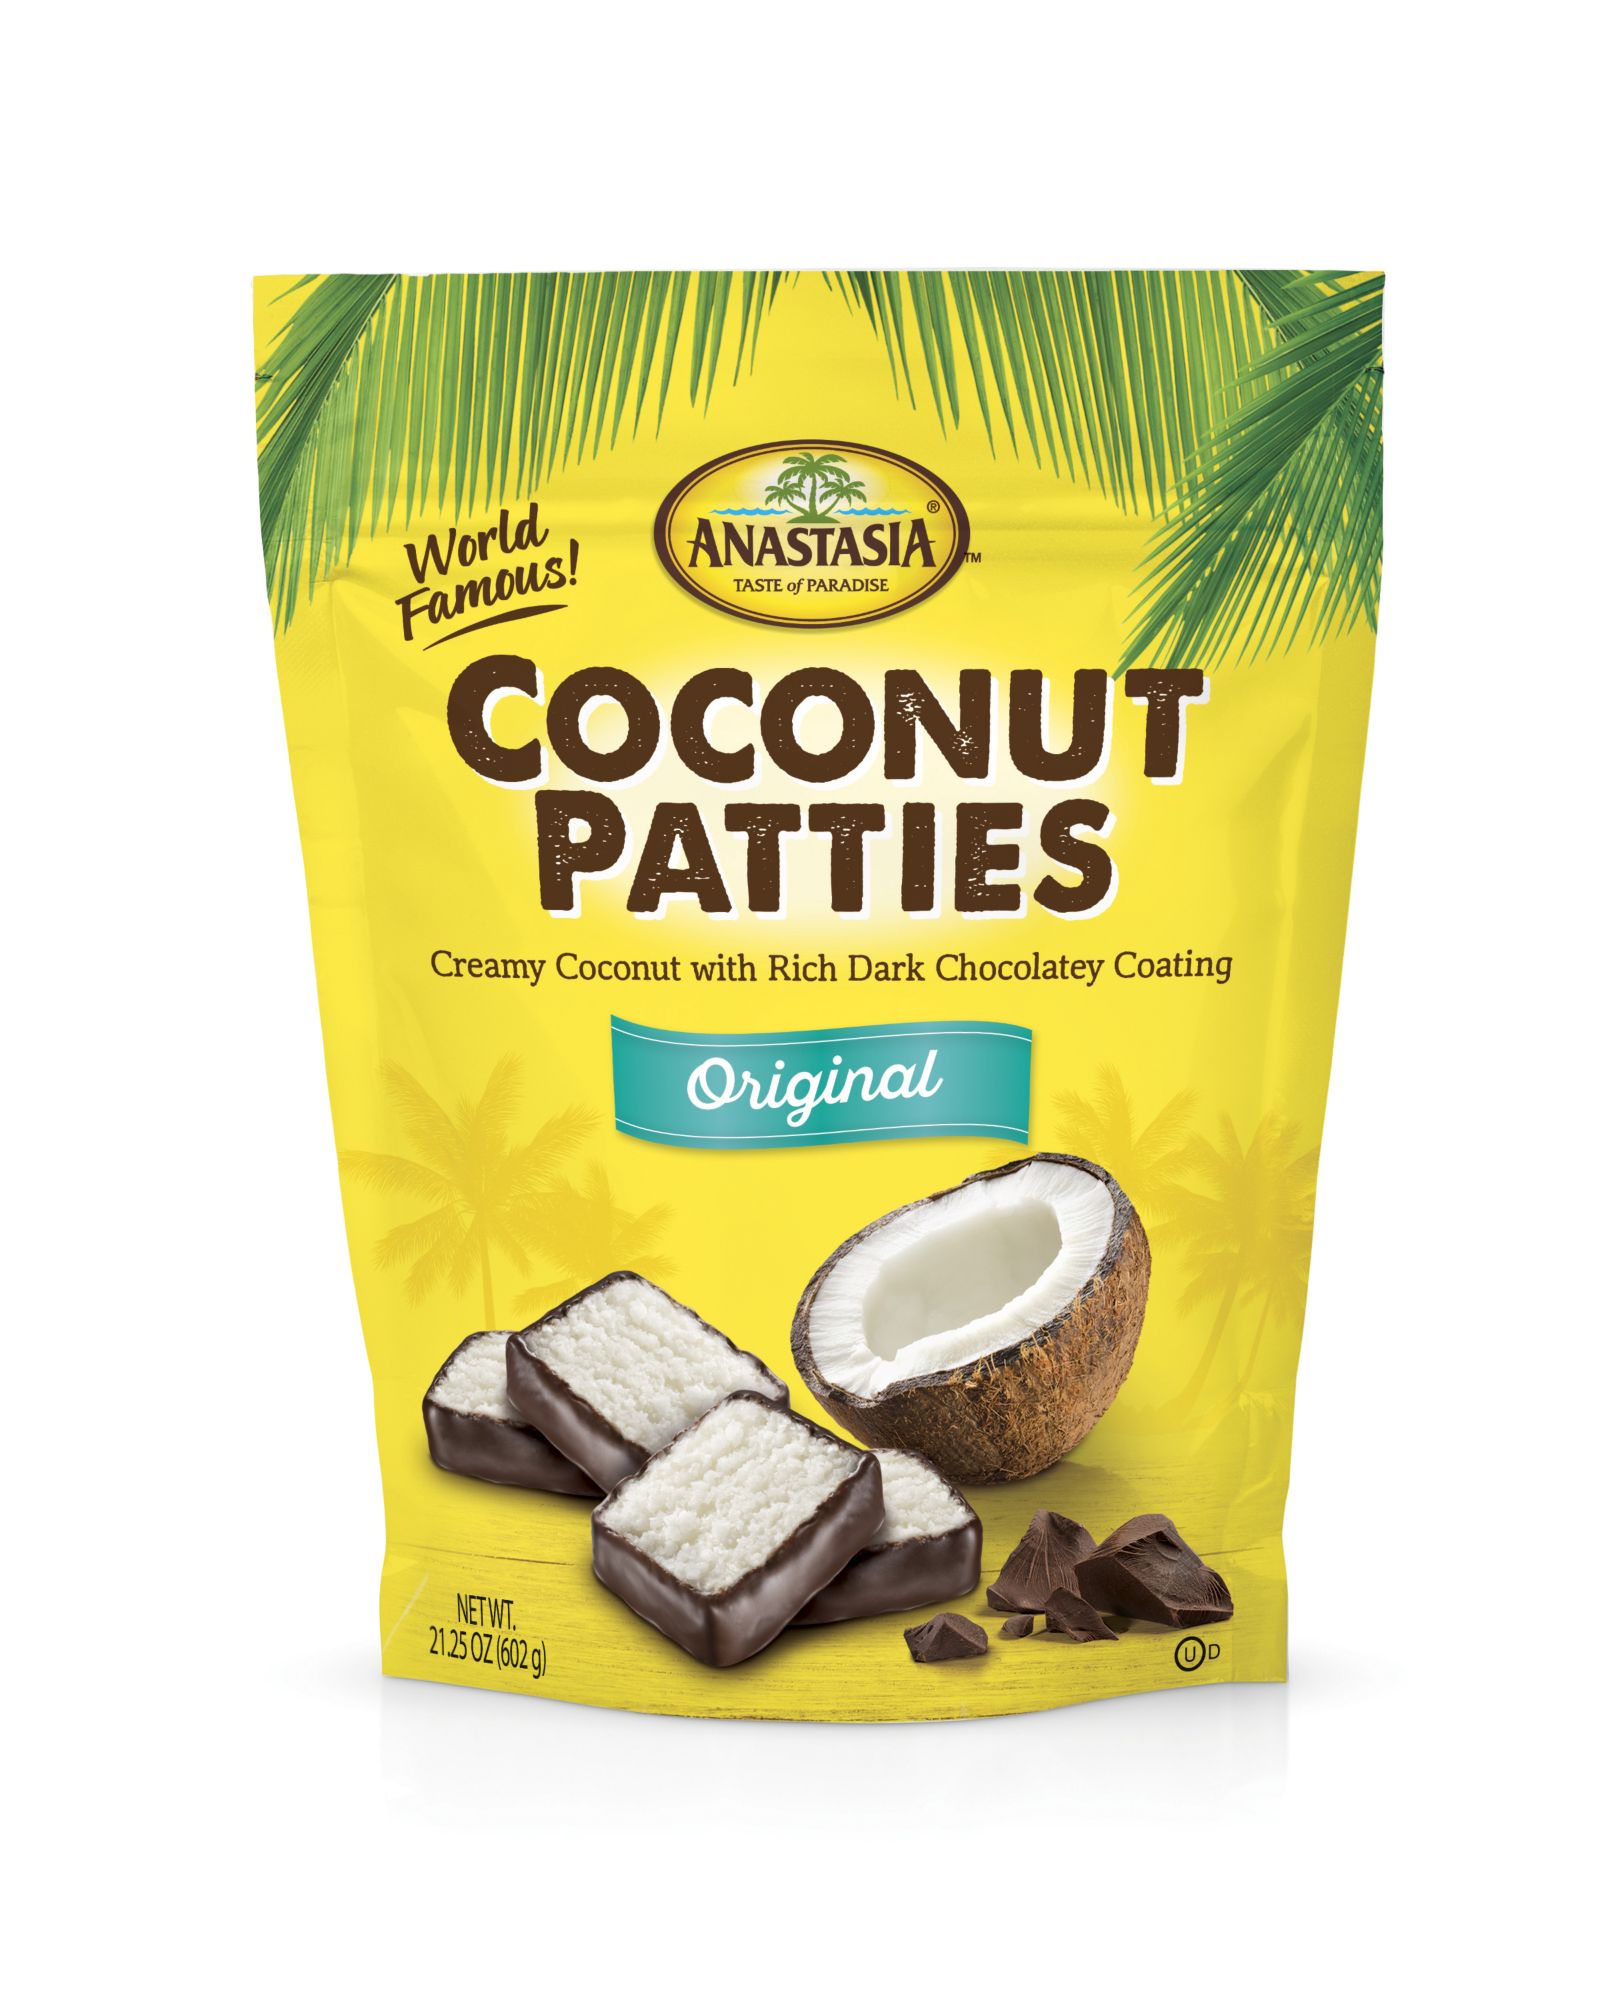 Anastasia Confections Classic Original Coconut Patties, 21.25 oz.